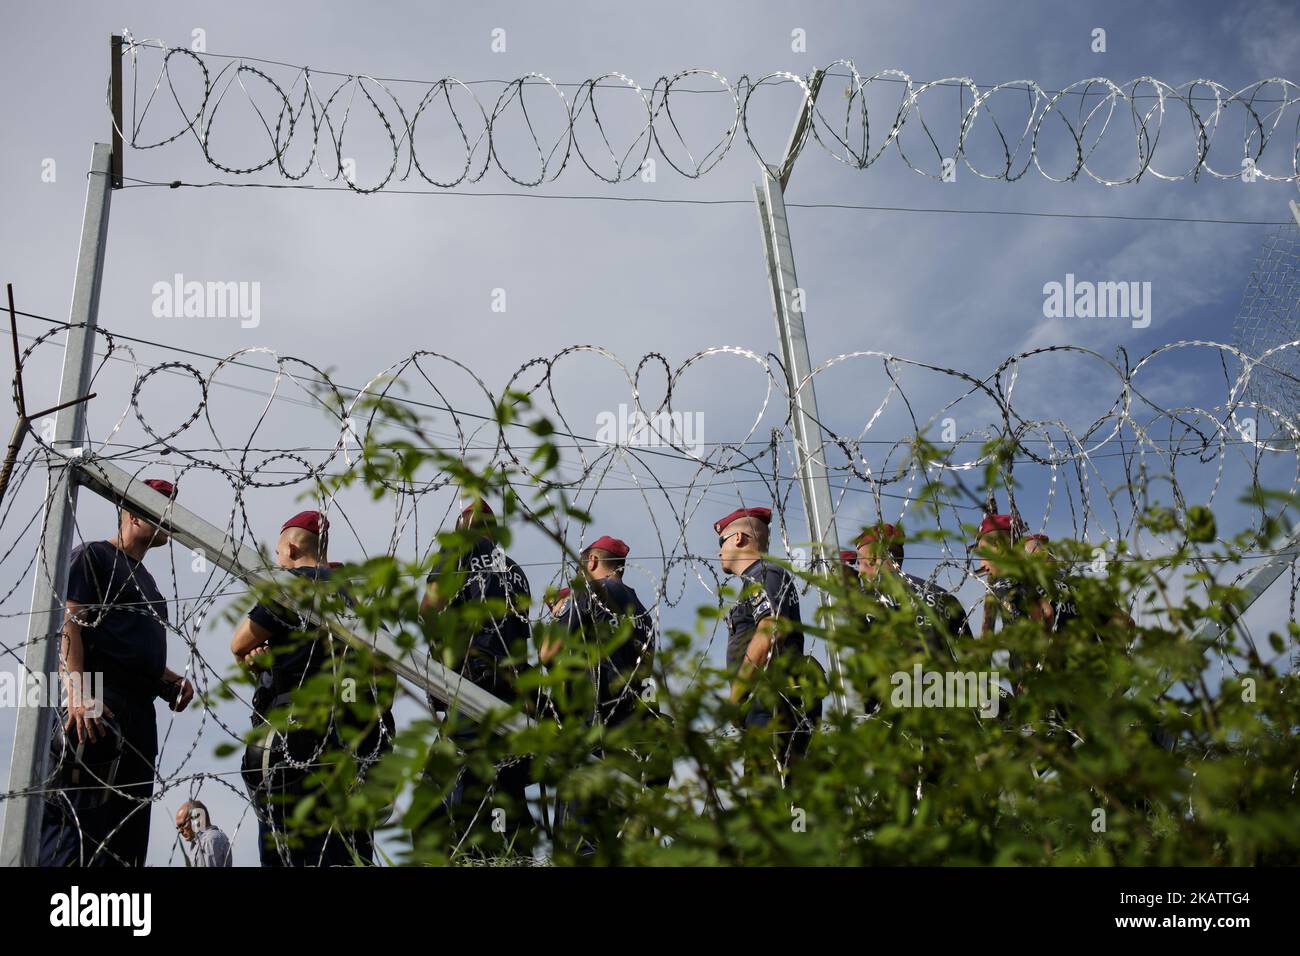 (9/14/2015) alambrada de púas húngaras. Hungría ha sido un importante país de tránsito para los migrantes, muchos de los cuales apuntan a continuar hacia Austria y Alemania. En 2015, Hungría construyó una barrera fronteriza en su frontera con Serbia y Croacia. La valla se construyó durante la crisis de los inmigrantes europeos con el objetivo de garantizar la seguridad fronteriza evitando que los refugiados y los inmigrantes entren ilegalmente, y permitiendo la opción de entrar a través de los puestos de control oficiales y solicitar asilo en Hungría, de conformidad con la legislación internacional y europea. El número de entradas ilegales en Hungría disminuyó considerablemente después de Th Foto de stock